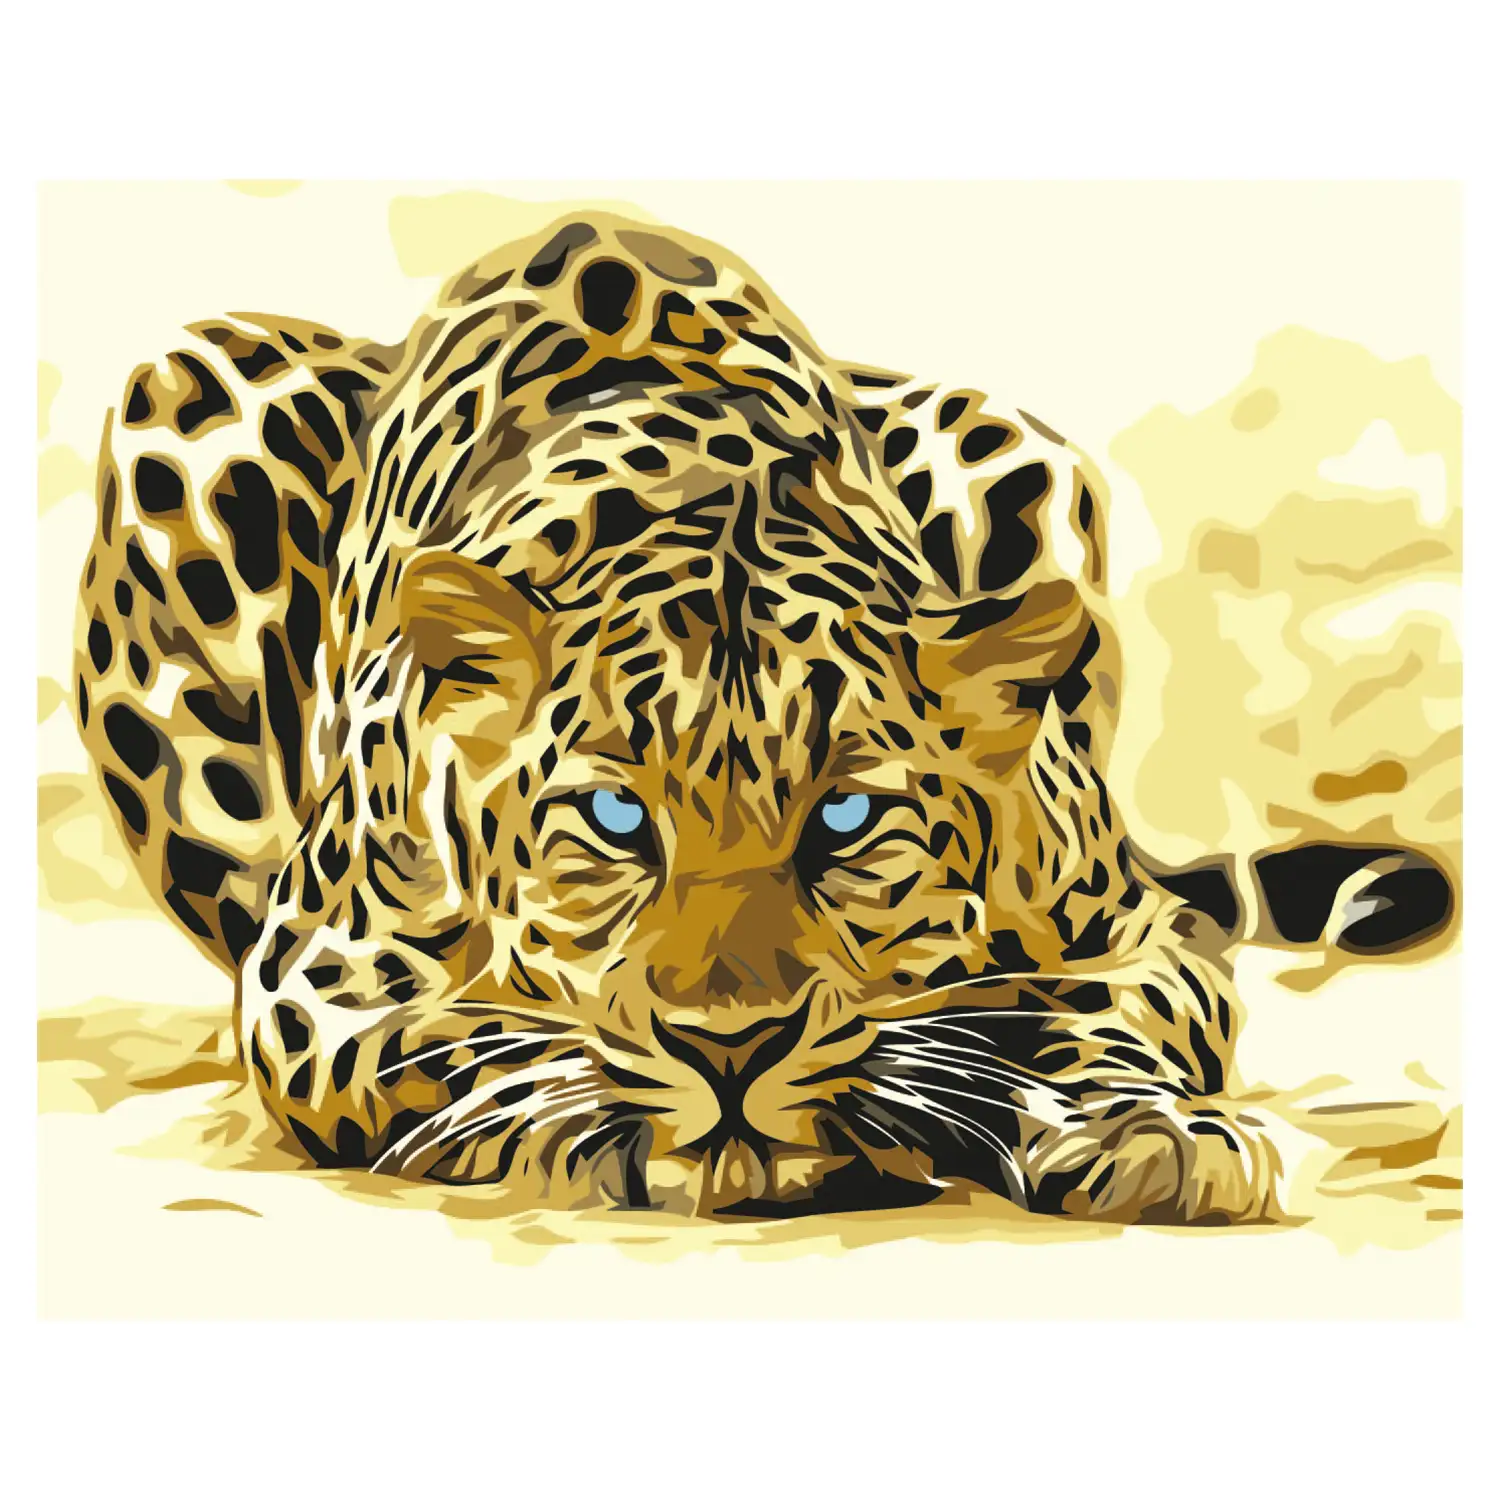 Lienzo con dibujo para pintar con números, de 40x50cm. Diseño leopardo. Incluye pinceles y pinturas necesarias.